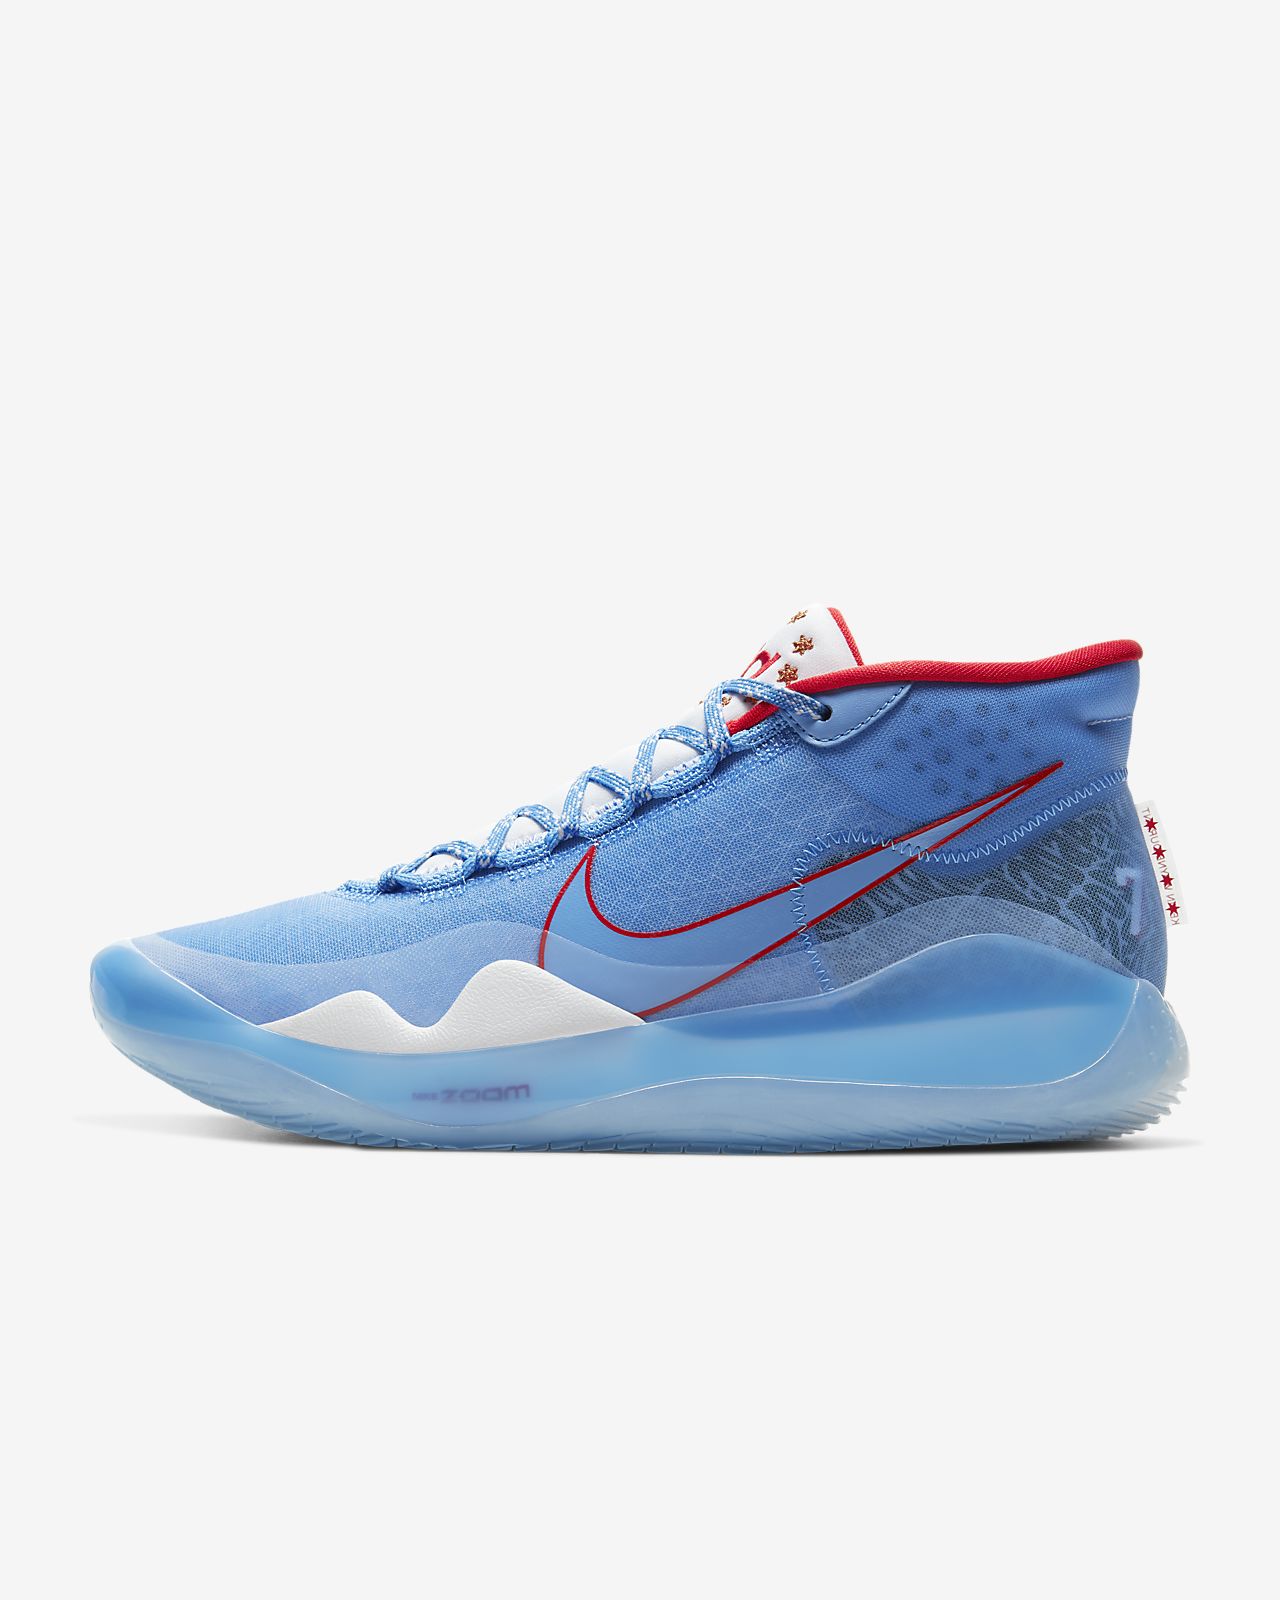 nike zoom kd12 basketball shoes blue